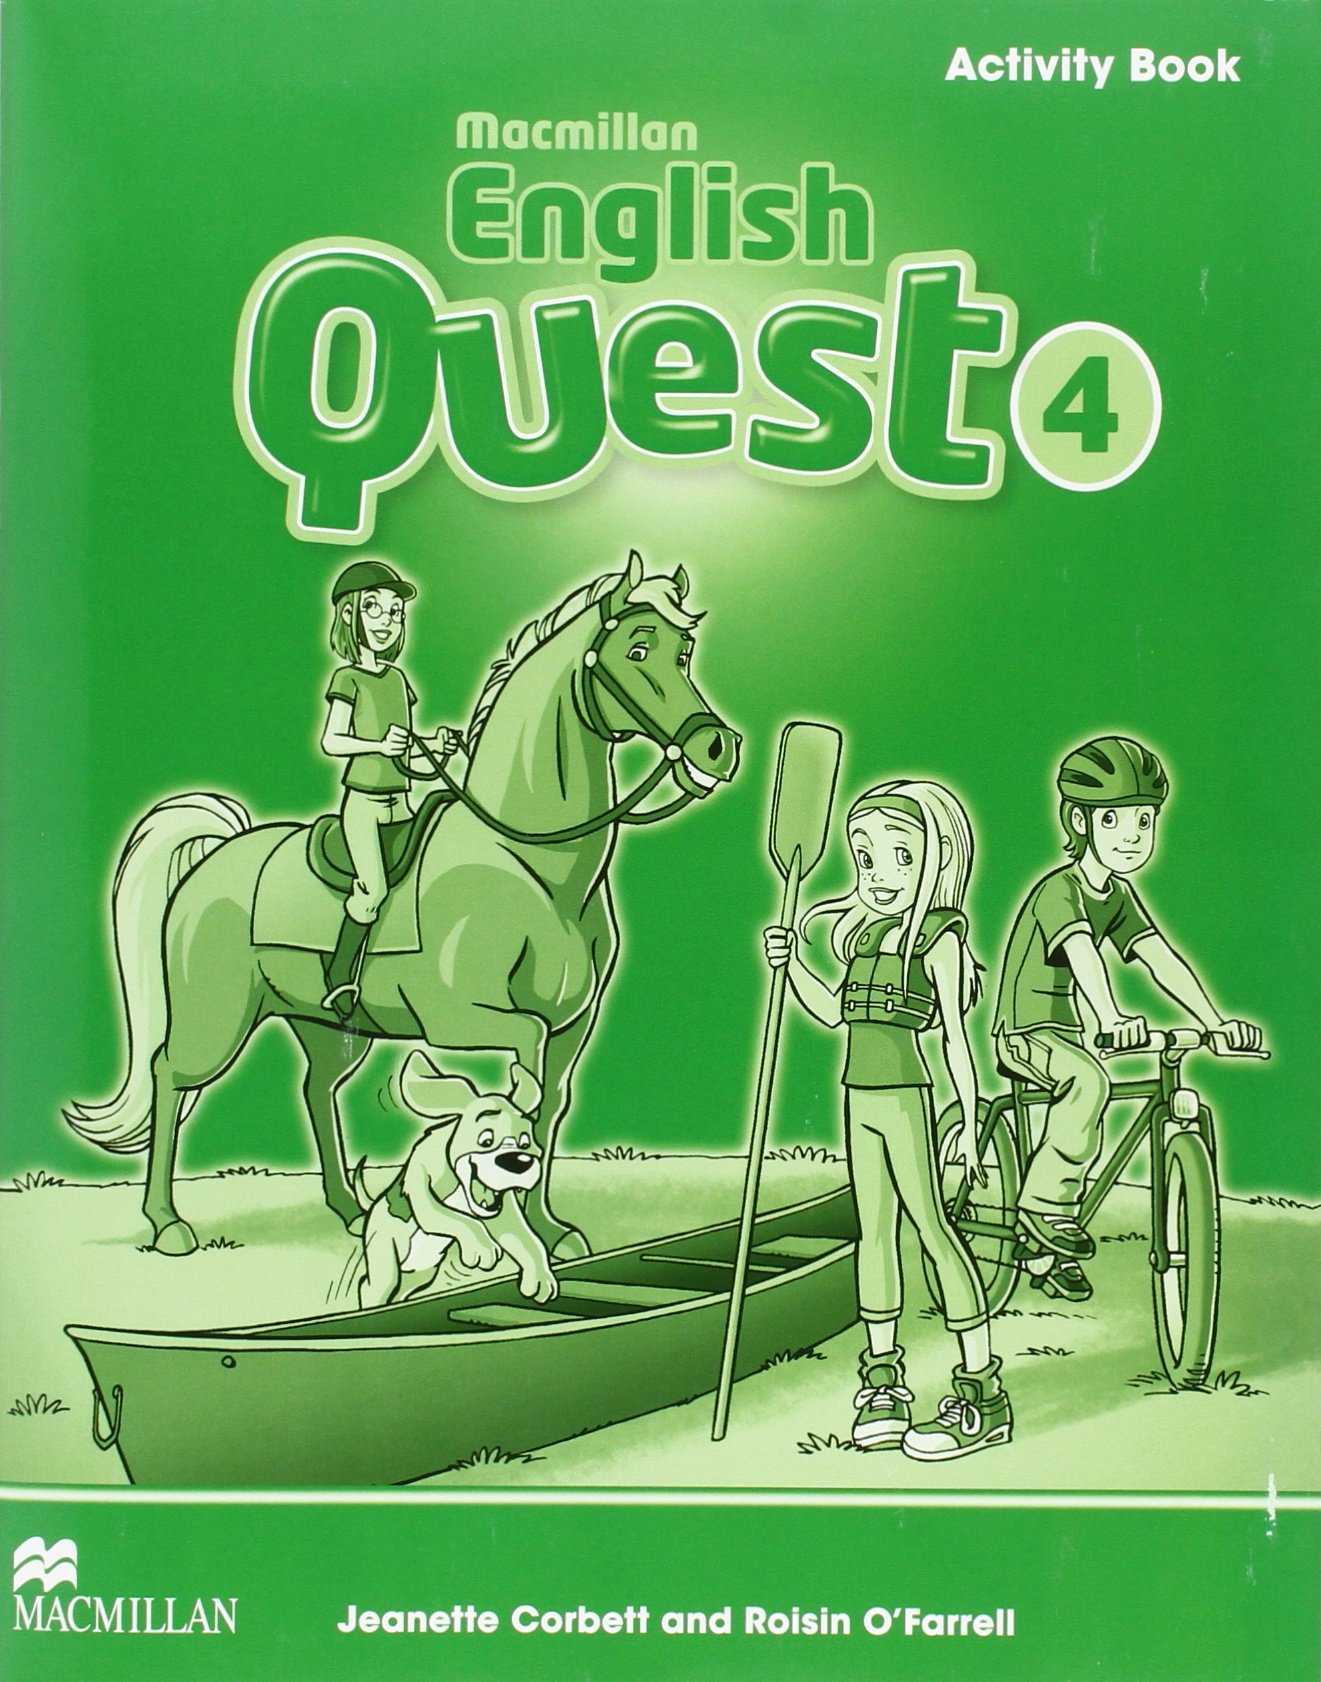 Macmillan English Quest Level 4 Activity Book | Roisin O\'Farrell, Jeanette Corbett